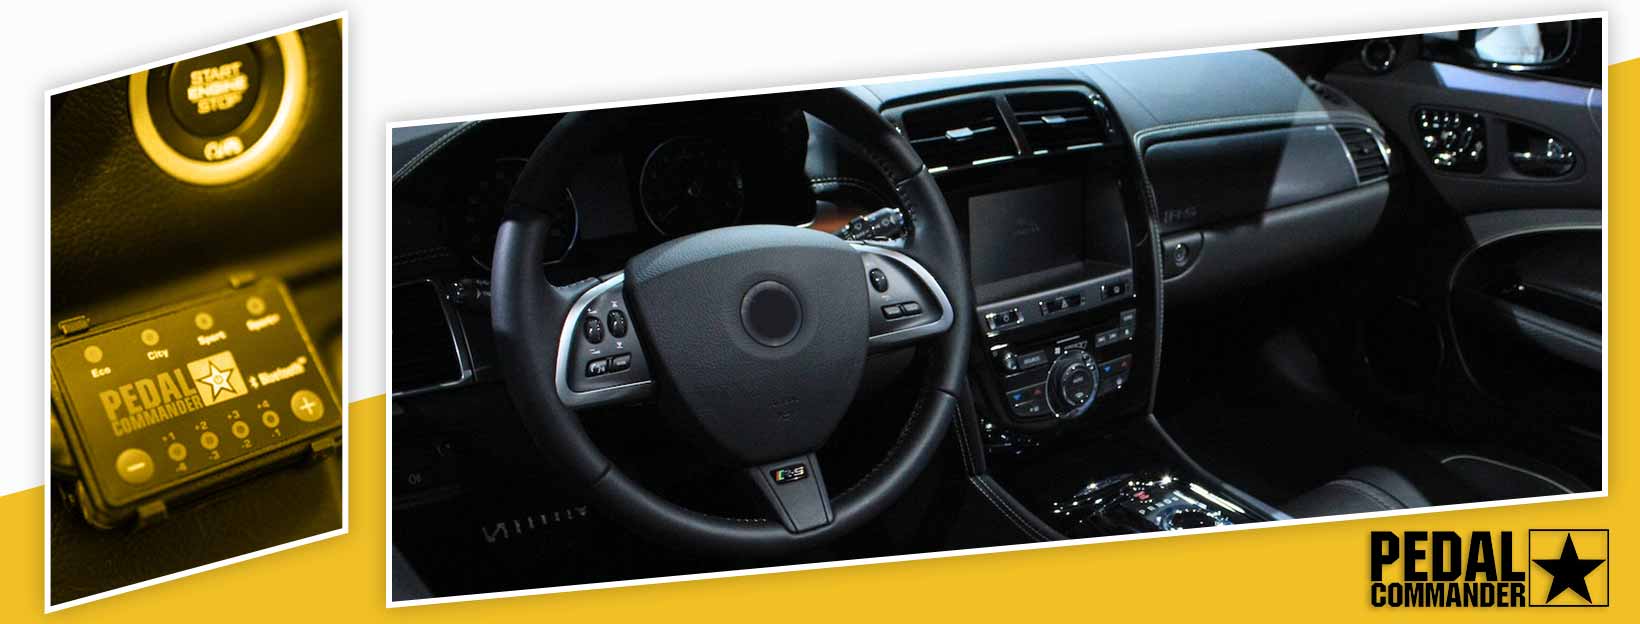 Pedal Commander for Jaguar XKR - interior